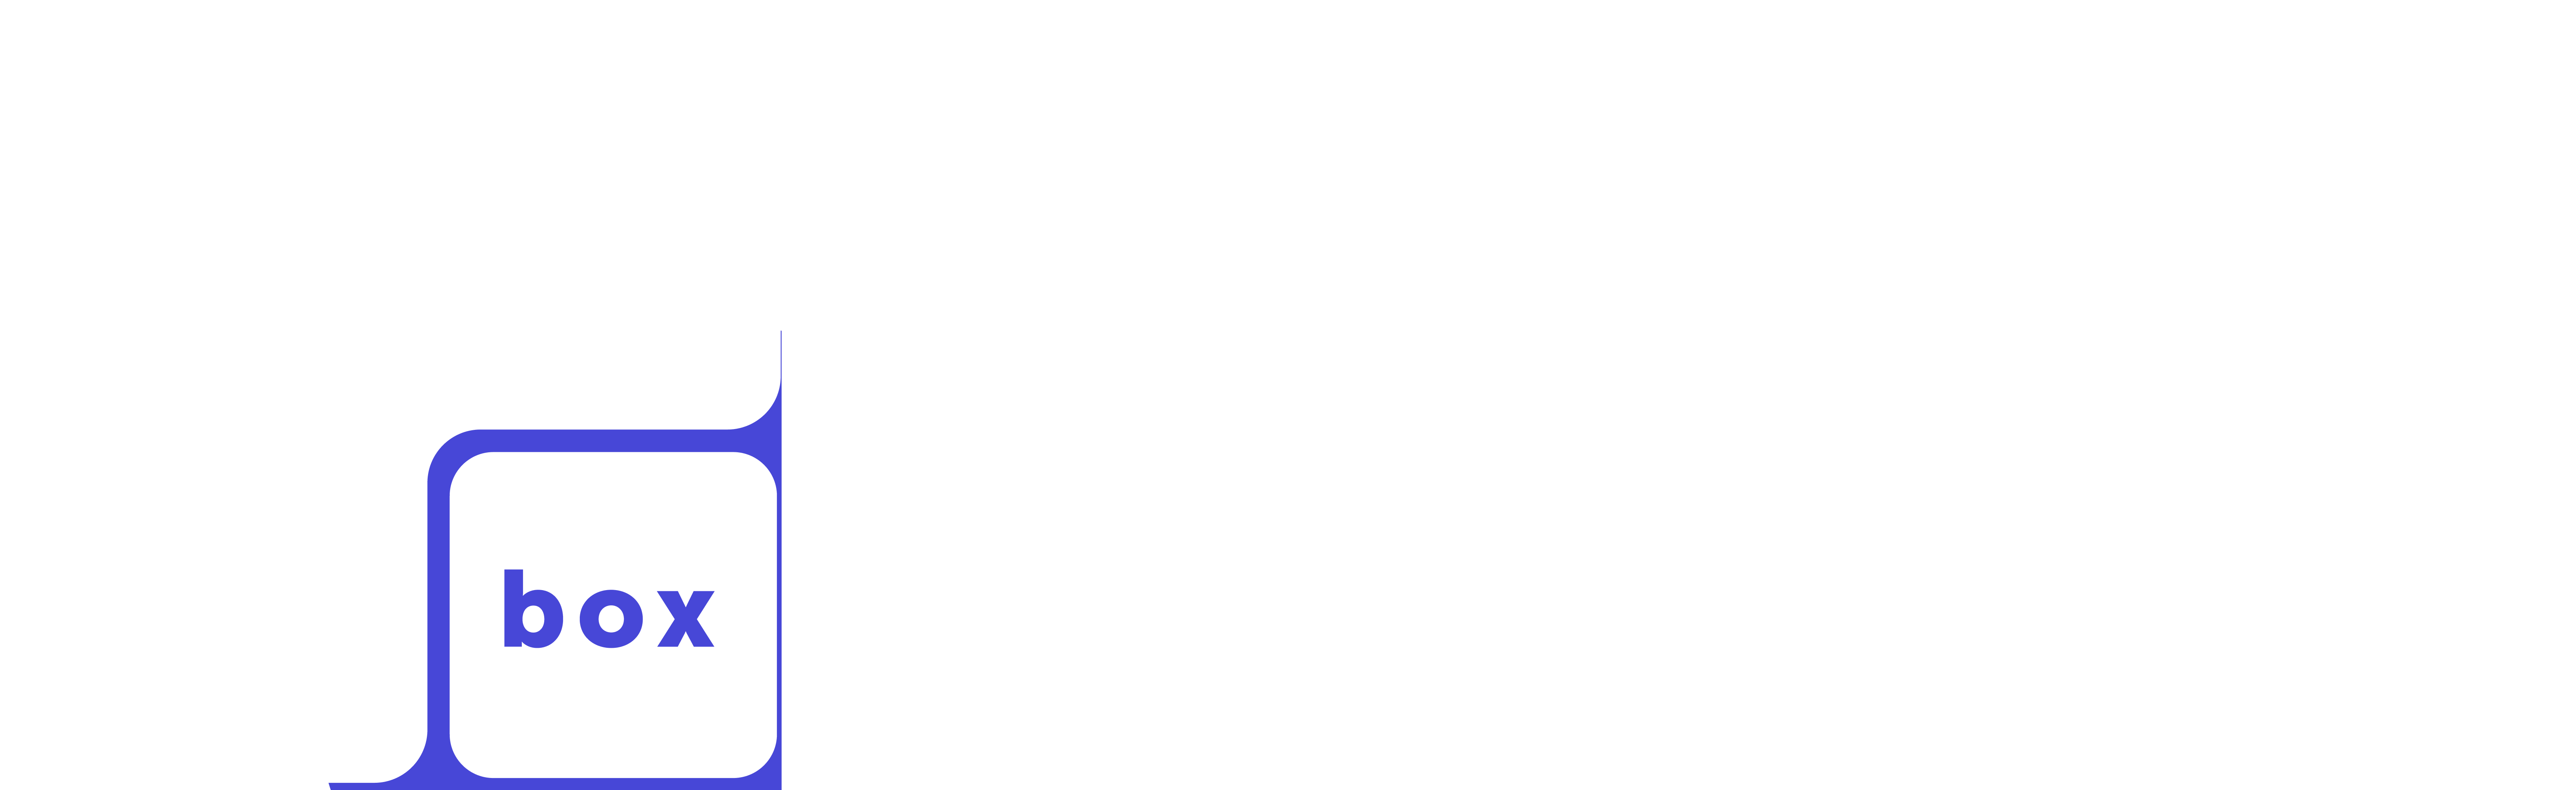 Whitbox logo